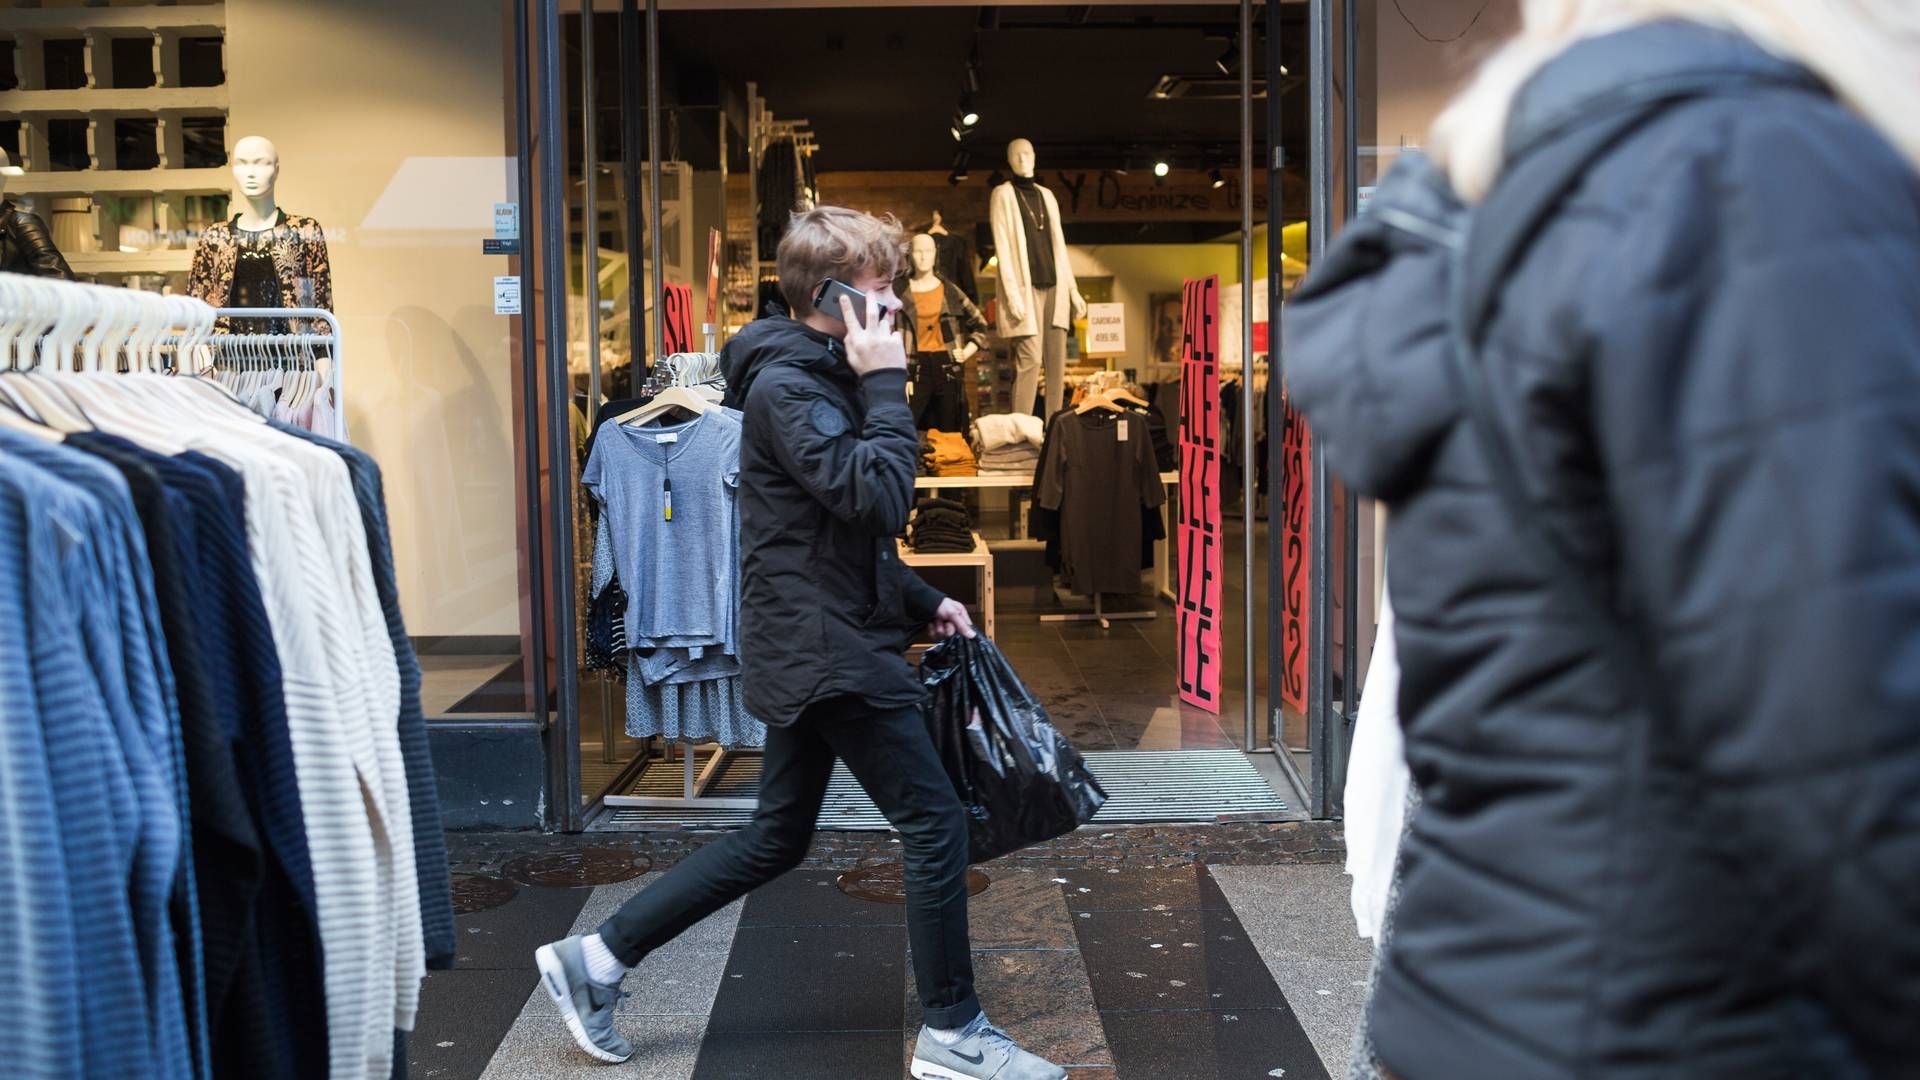 Det store bytteræs er skudt i gang. Tæt på 85 pct. af bytteriet foregår i de fysiske butikker, og tøj er den mest byttede julegave. | Foto: Katrine Marie Kragh/Jyllands-Posten/Ritzau Scanpix